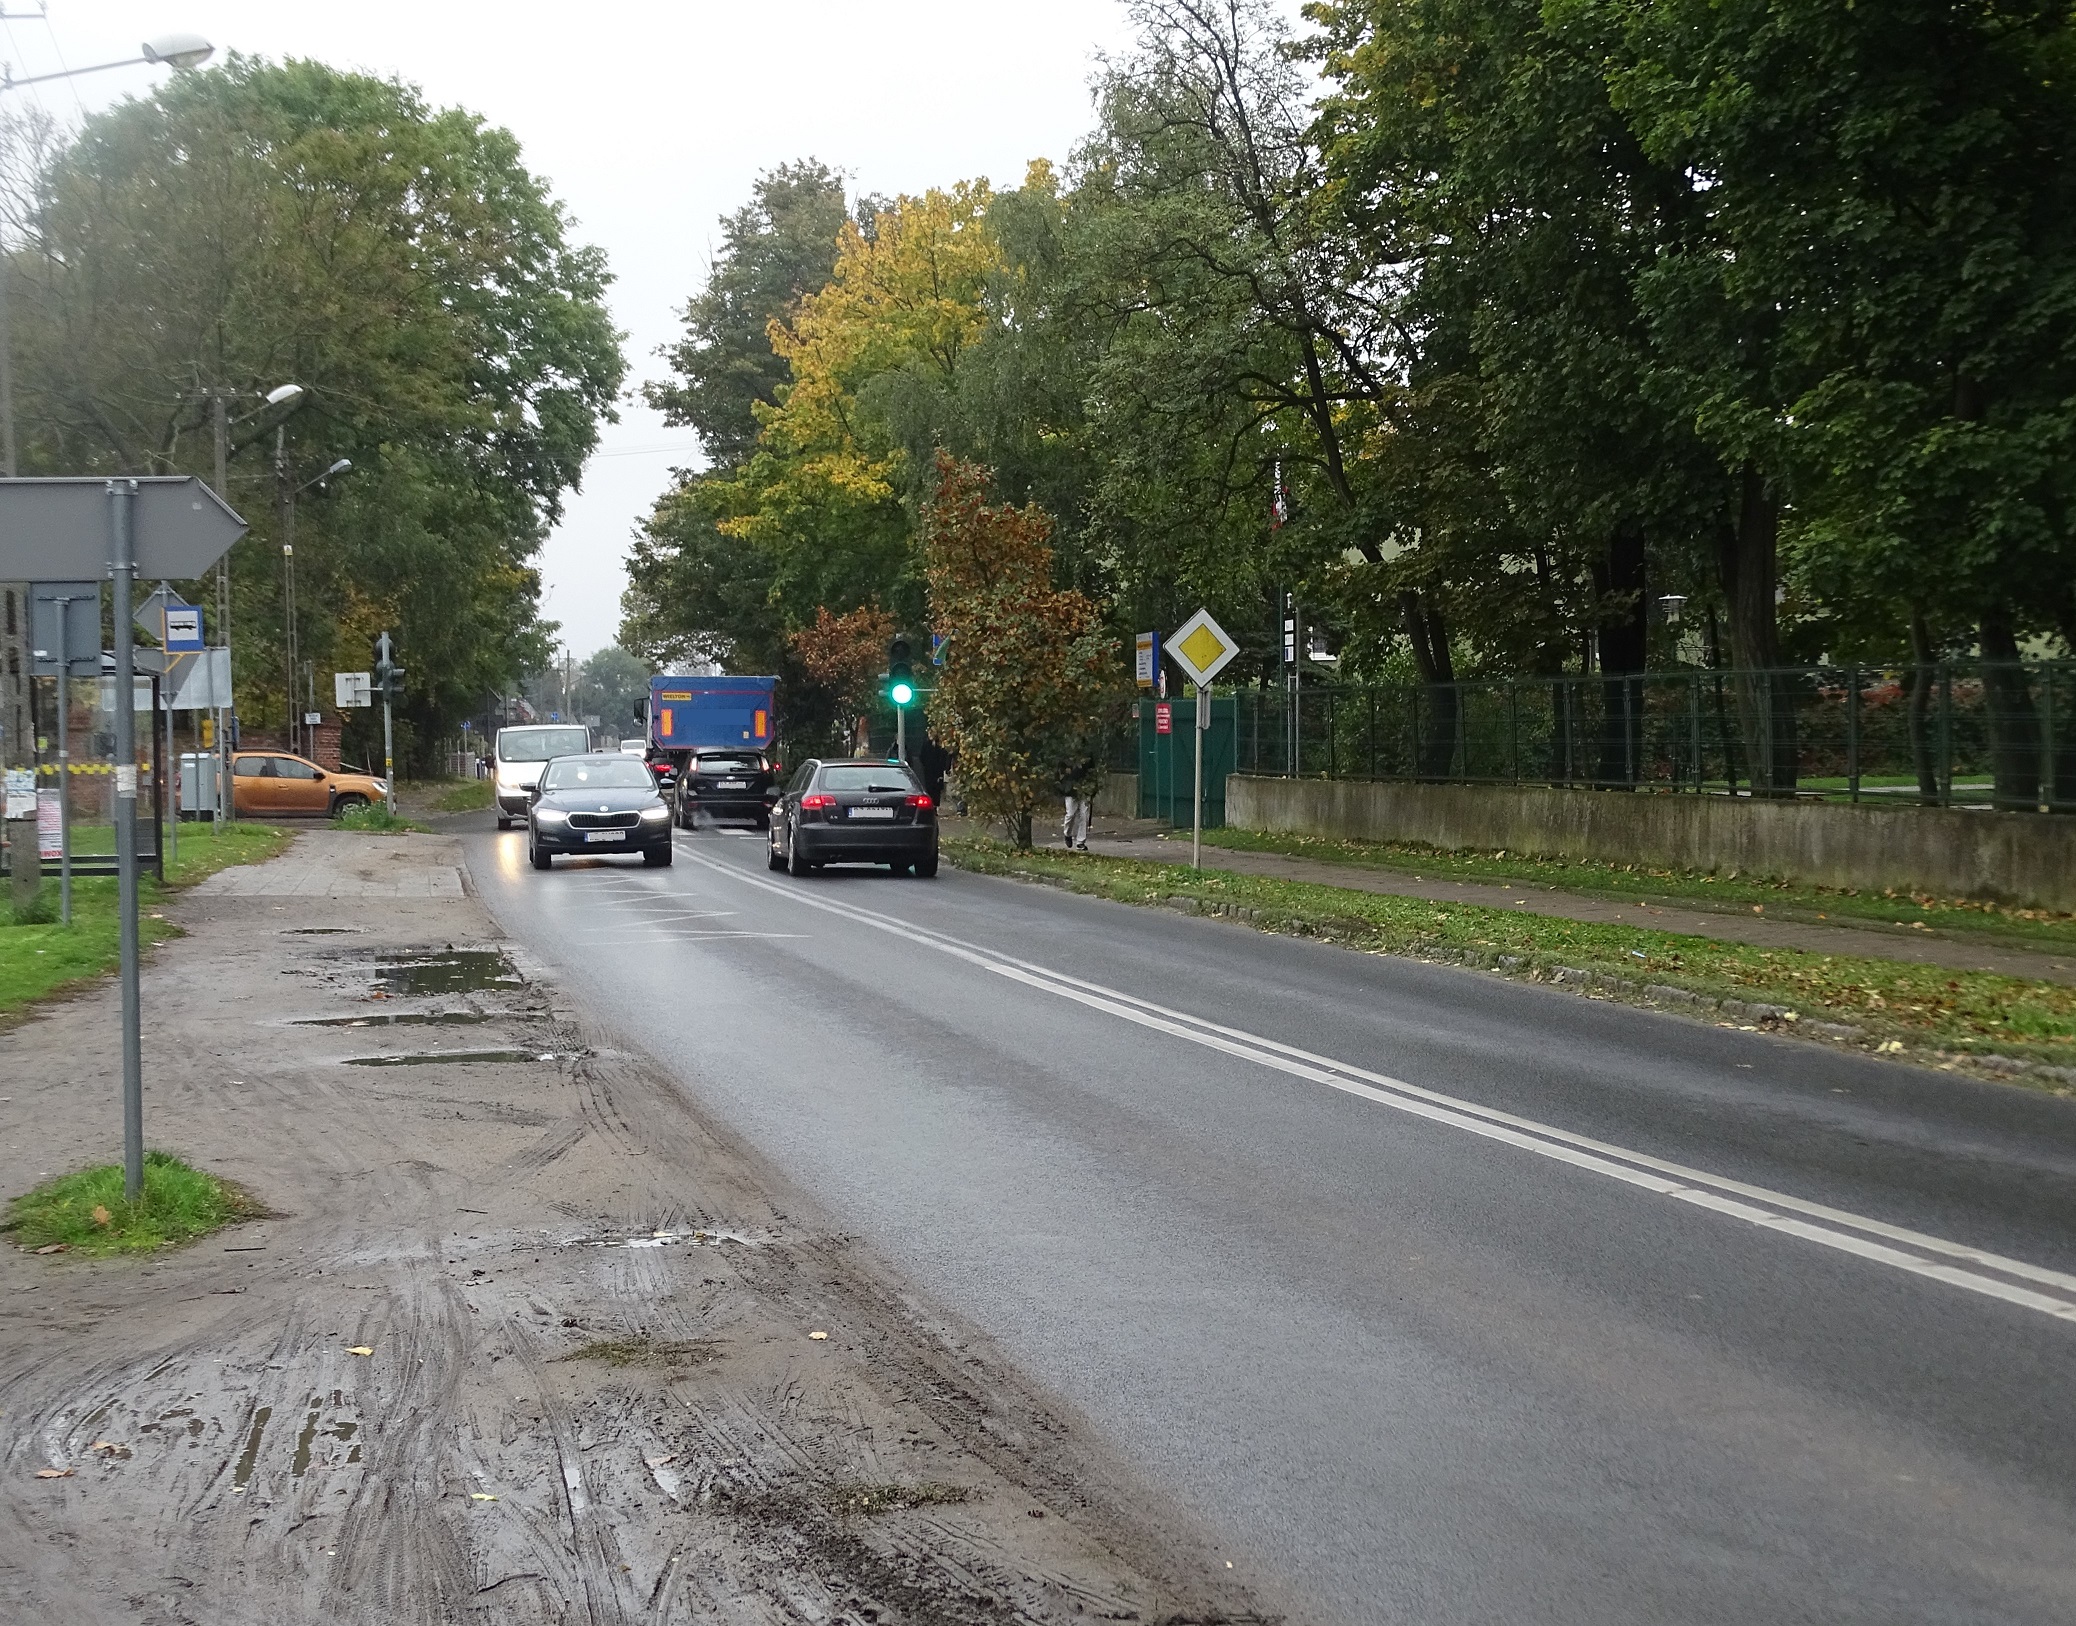 Na zdjęciu widać ulicę asfaltową z dołu prawej strony, w kierunku lewej strony (środek zdjęcia). Po lewej stronie błotniste pobocze, po prawej pas zieleni i chodnik, a dalej płot i drzewa. Na ulicy w obu kierunkach jadą samochody. W dalszej perspektywie drzewa.